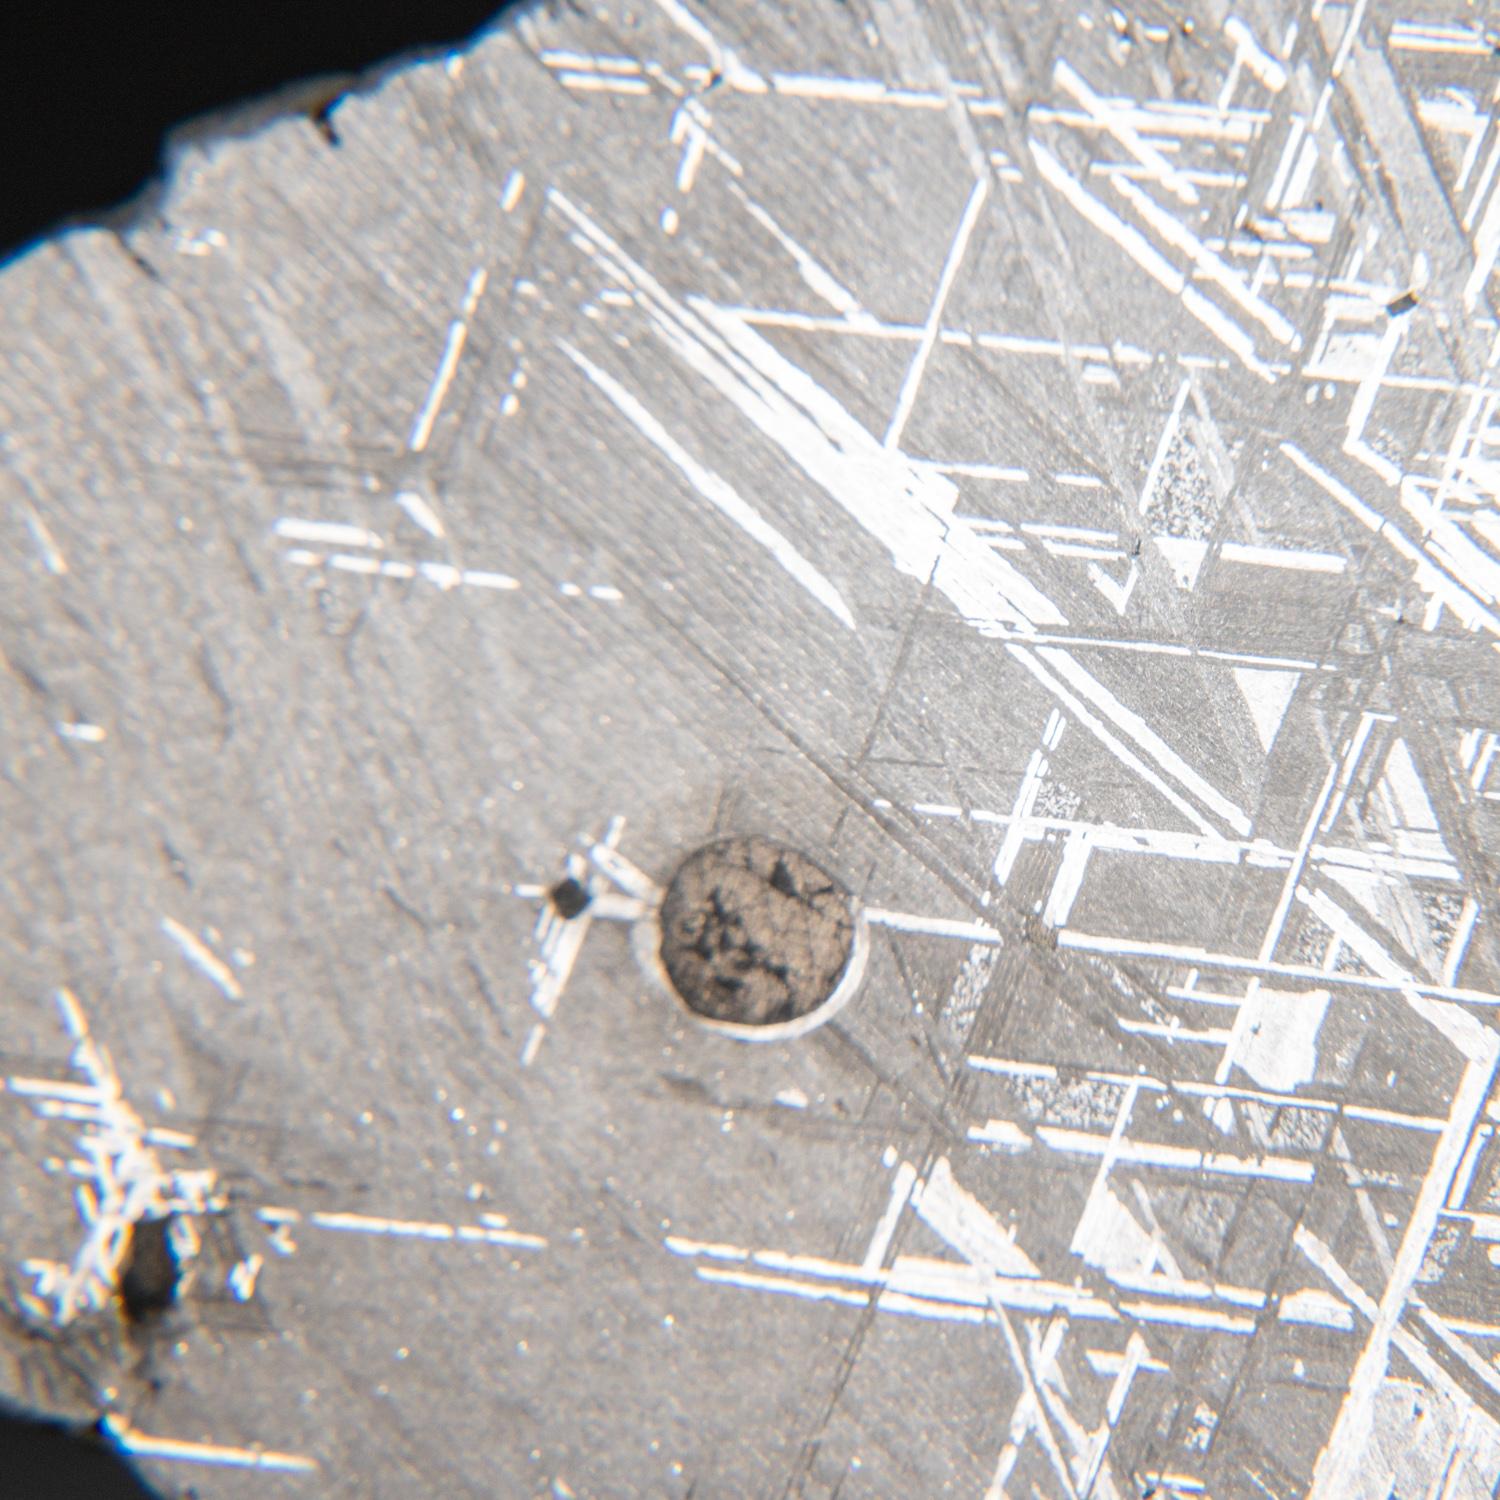 Rock Crystal Genuine Muonionalusta Meteorite Slice (385 grams) For Sale